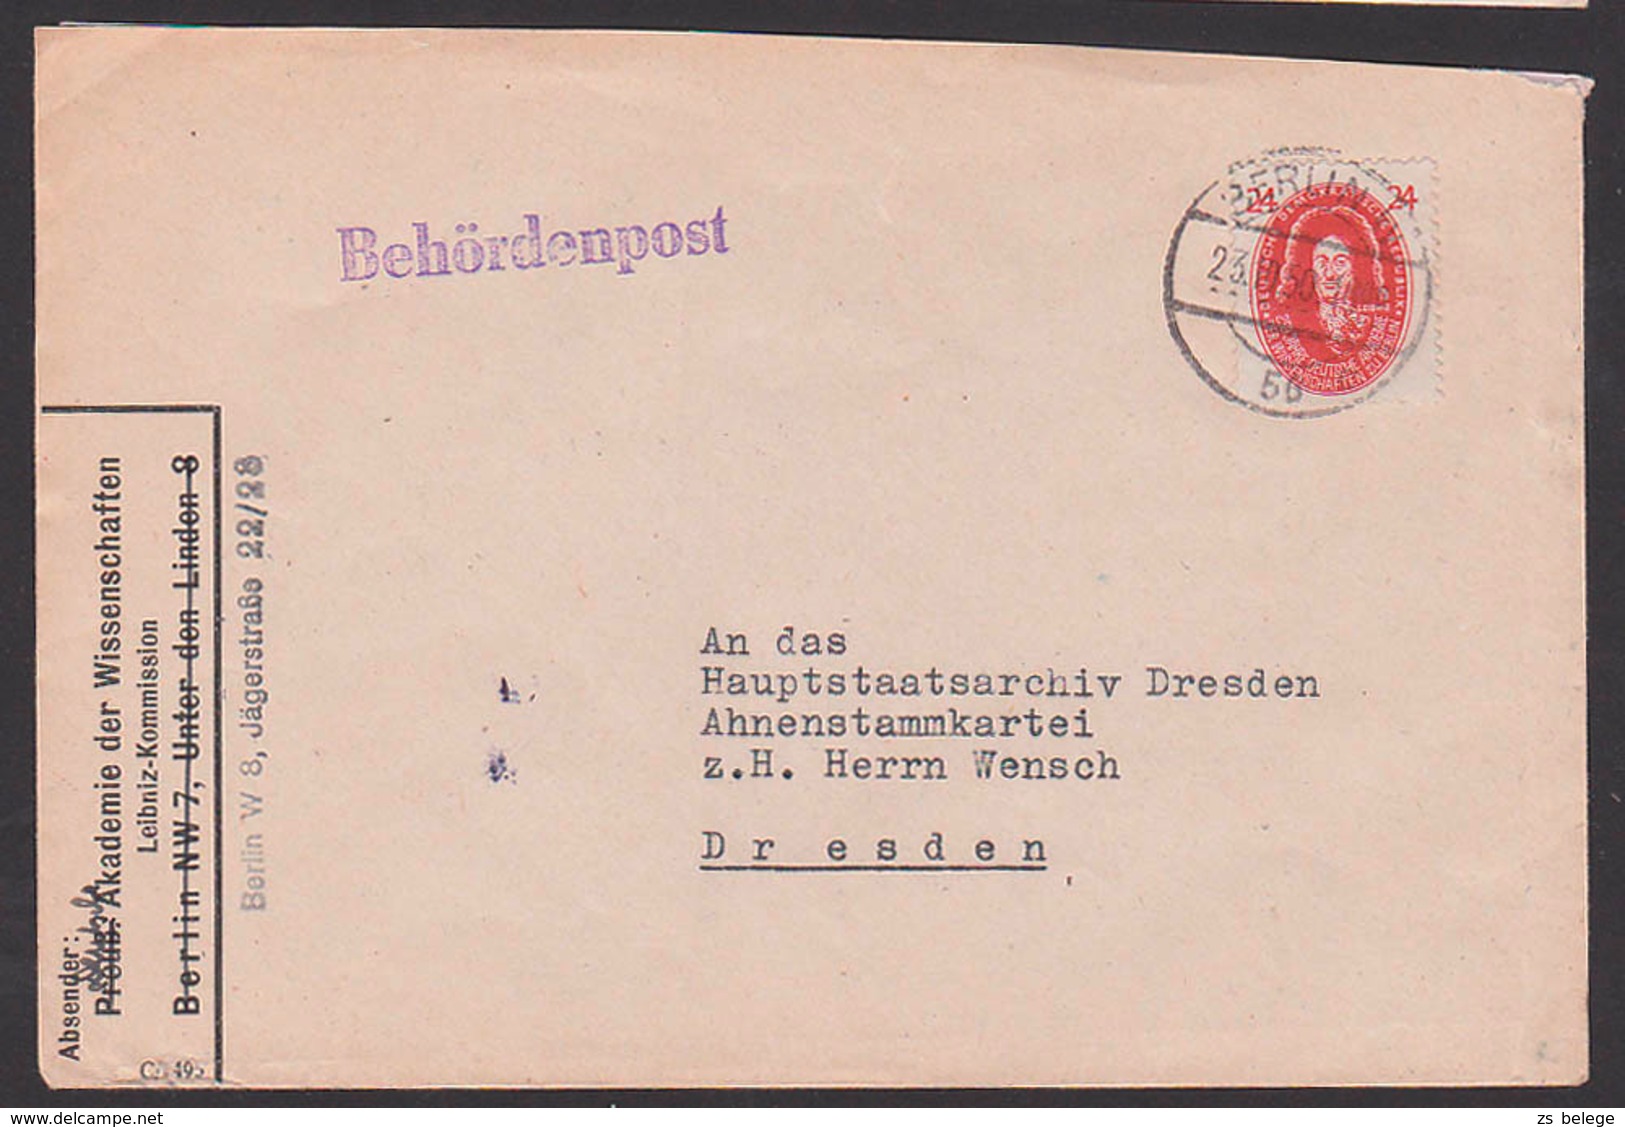 Akademie Der Wissenschaften Berlin, G. W. Leibnitz 24 Pfg. DDR 269, Berlin Behördenpost, Abs. Leibnitz-Kommission - Briefe U. Dokumente